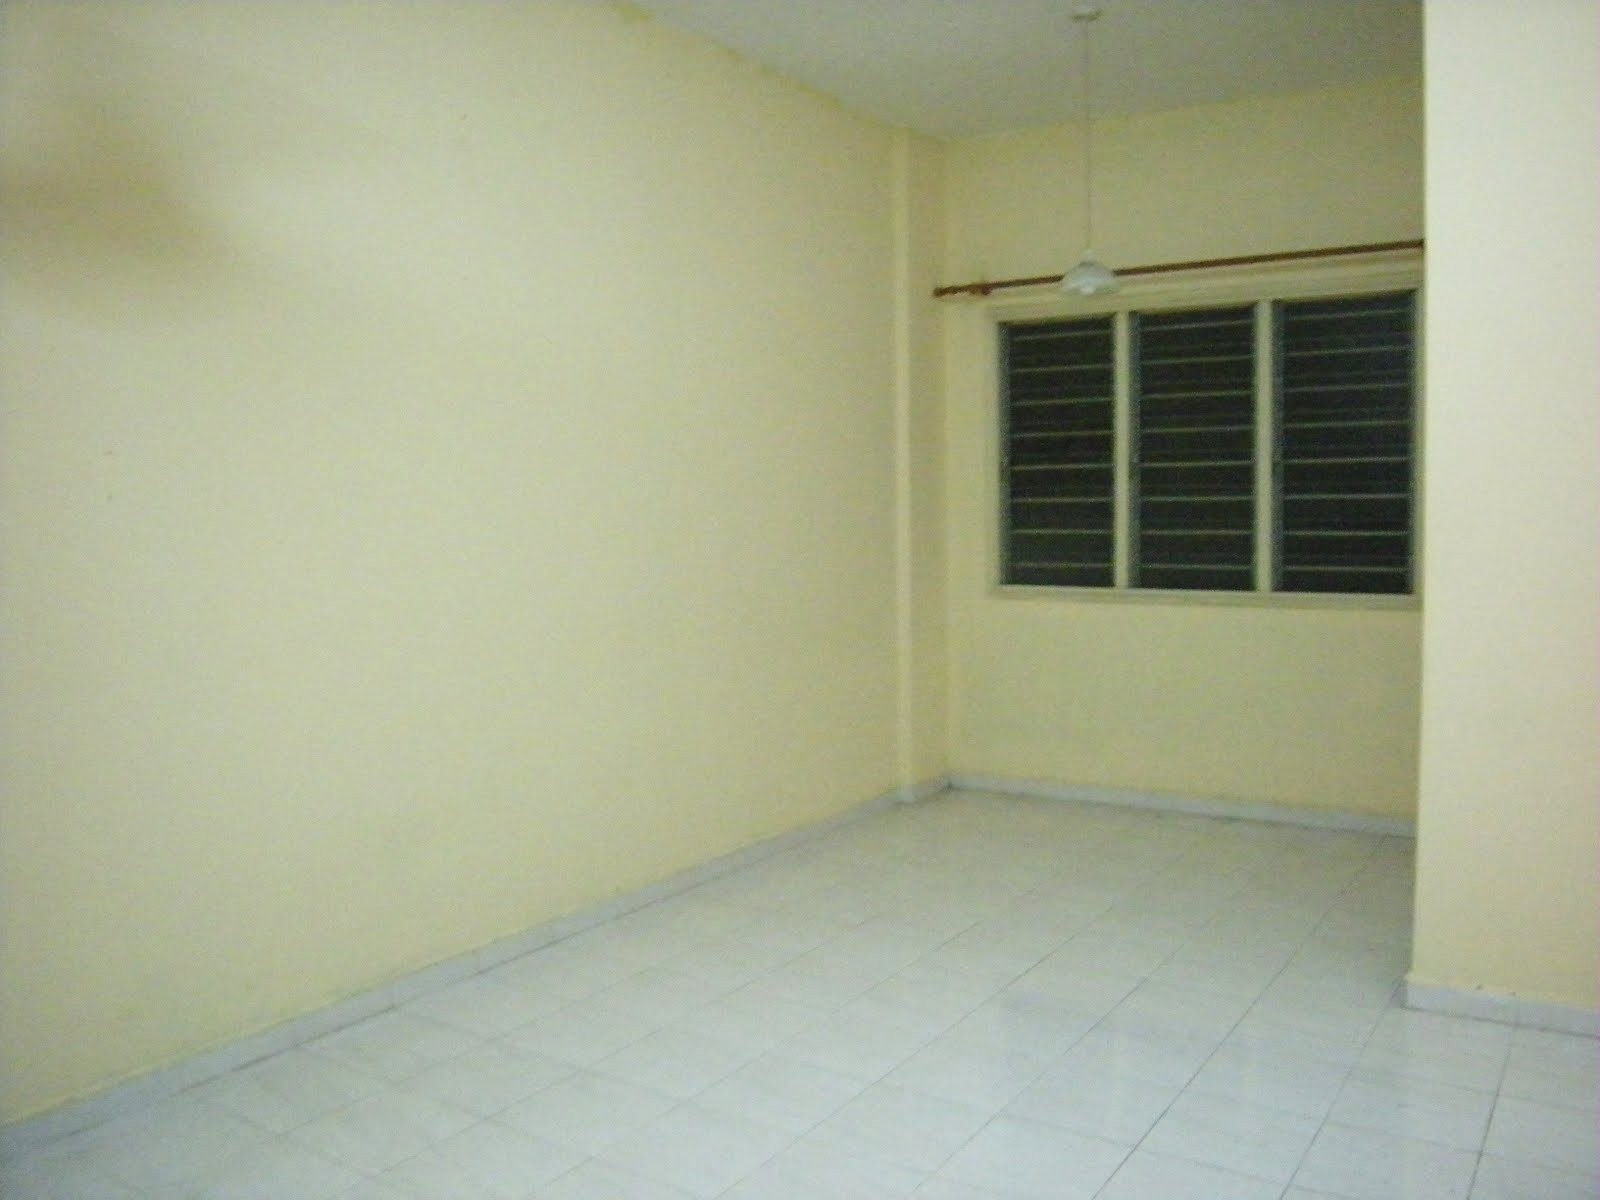 wallpaper dinding ruang tamu murah,property,room,floor,building,real estate